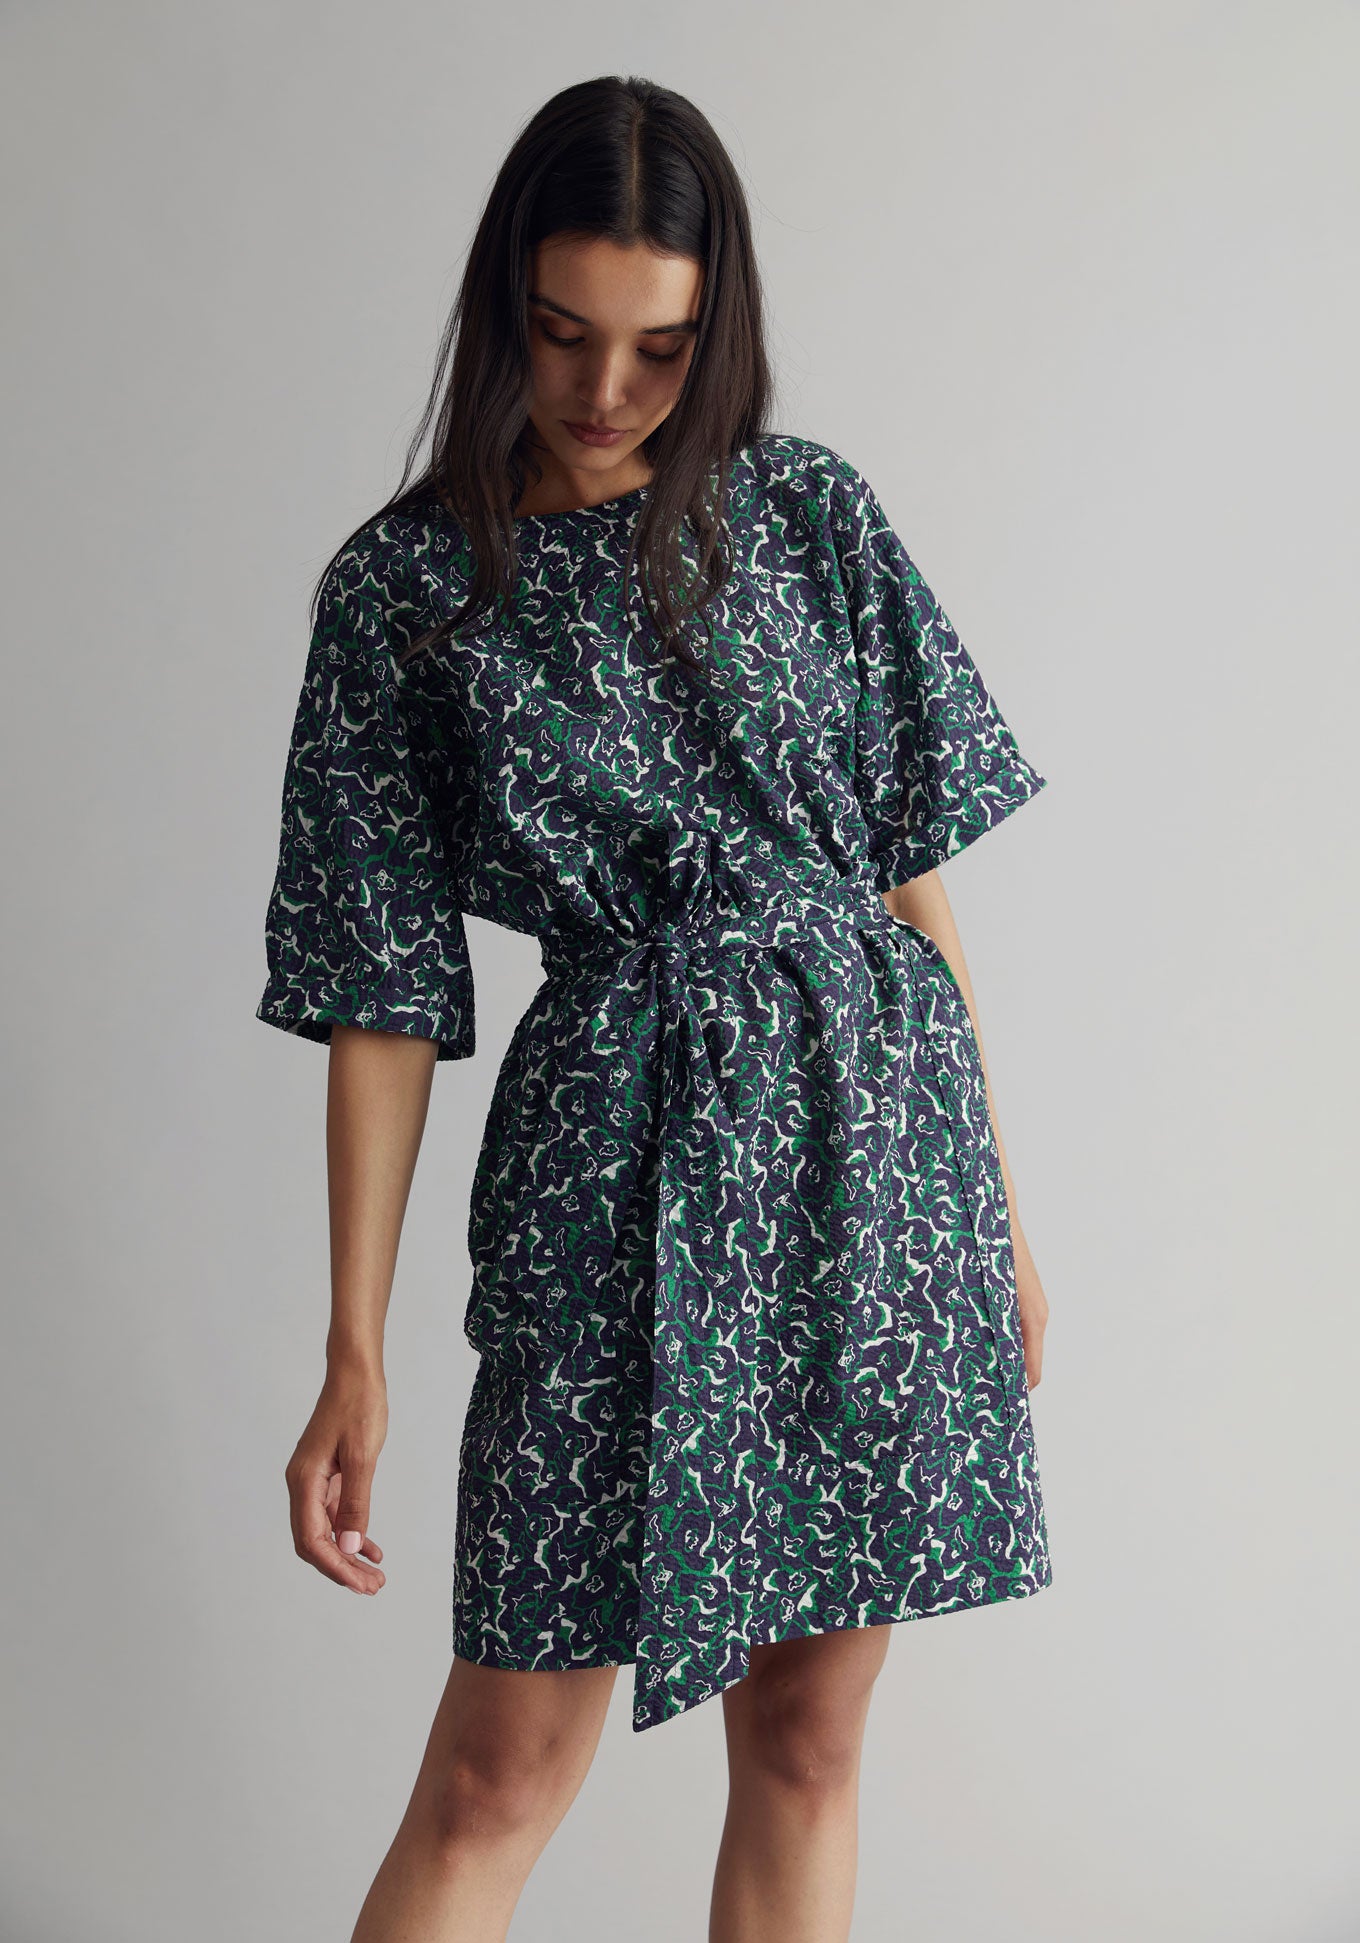 AKINA Dress - Organic Cotton Navy Print, SIZE 1 / UK 8 / EUR 36